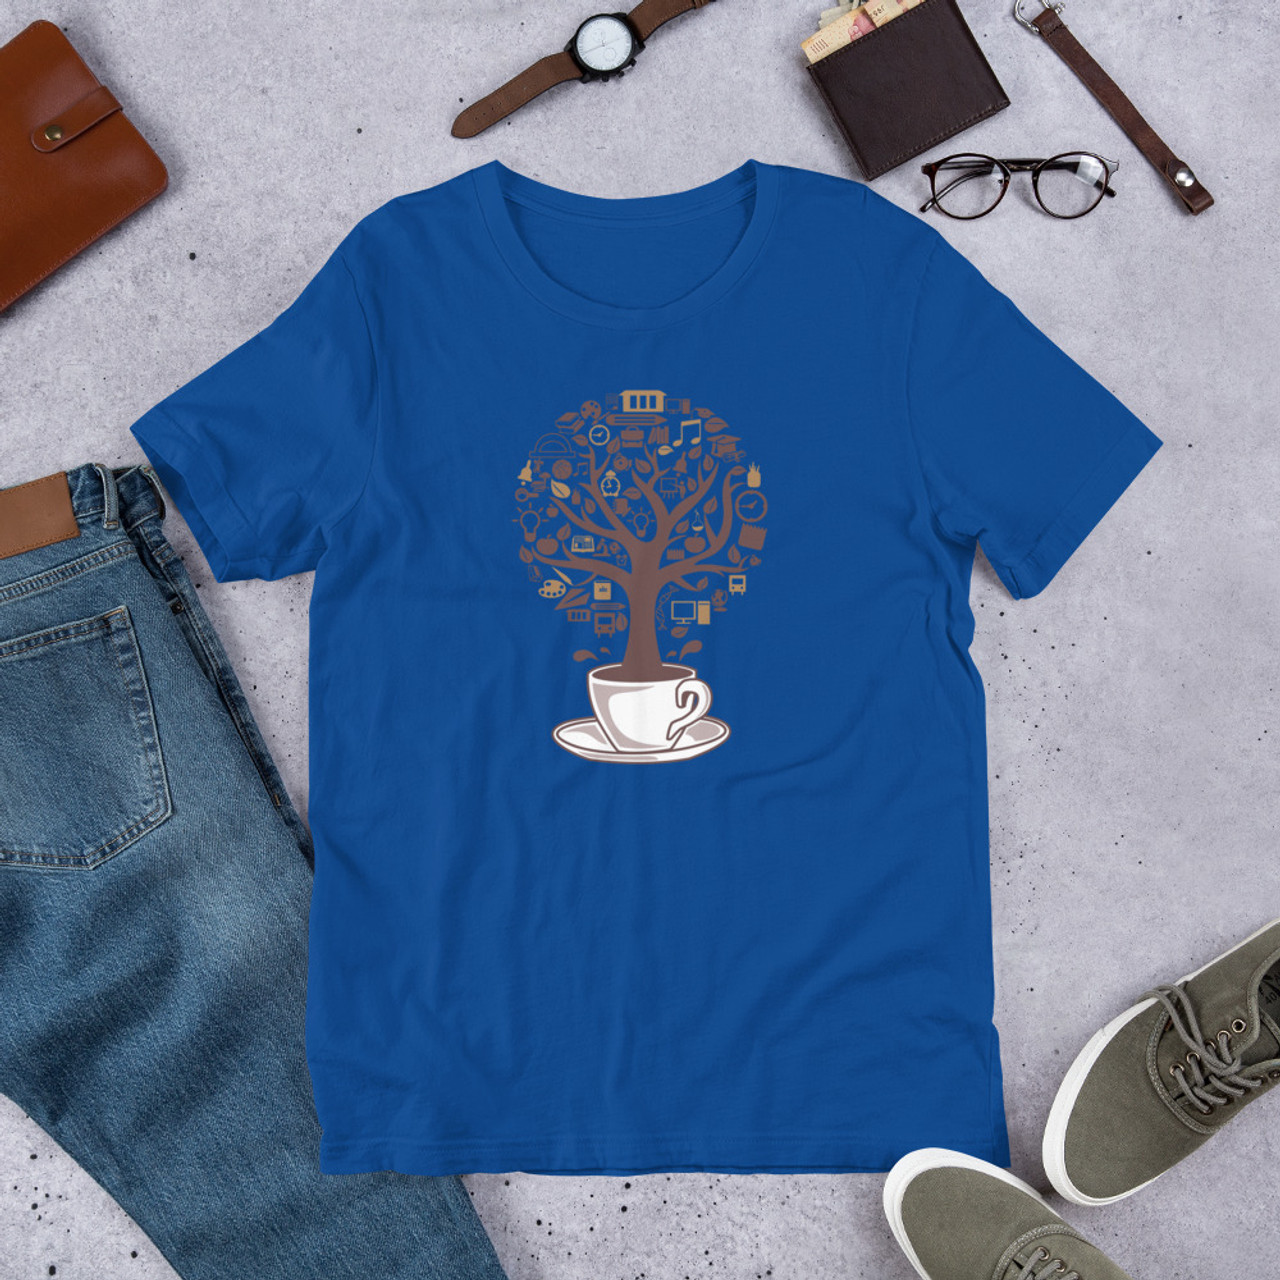 True Royal T-Shirt - Bella + Canvas 3001 Coffee Tree